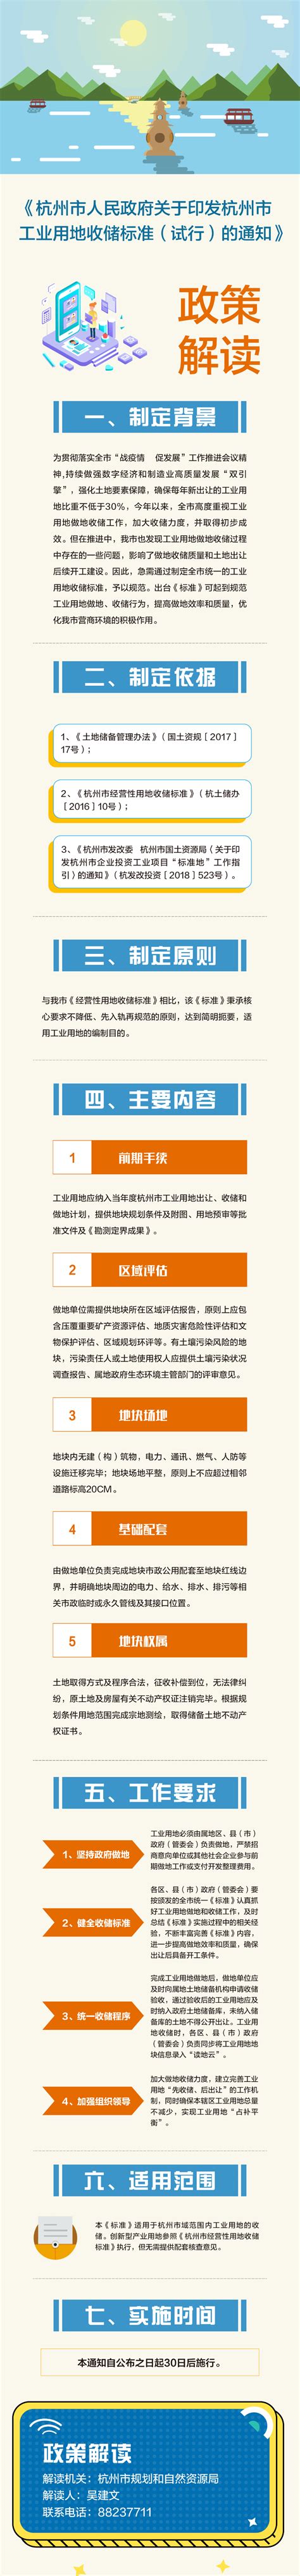 《杭州市人民政府关于印发杭州市工业用地收储标准（试行）的通知》的图文政策解读